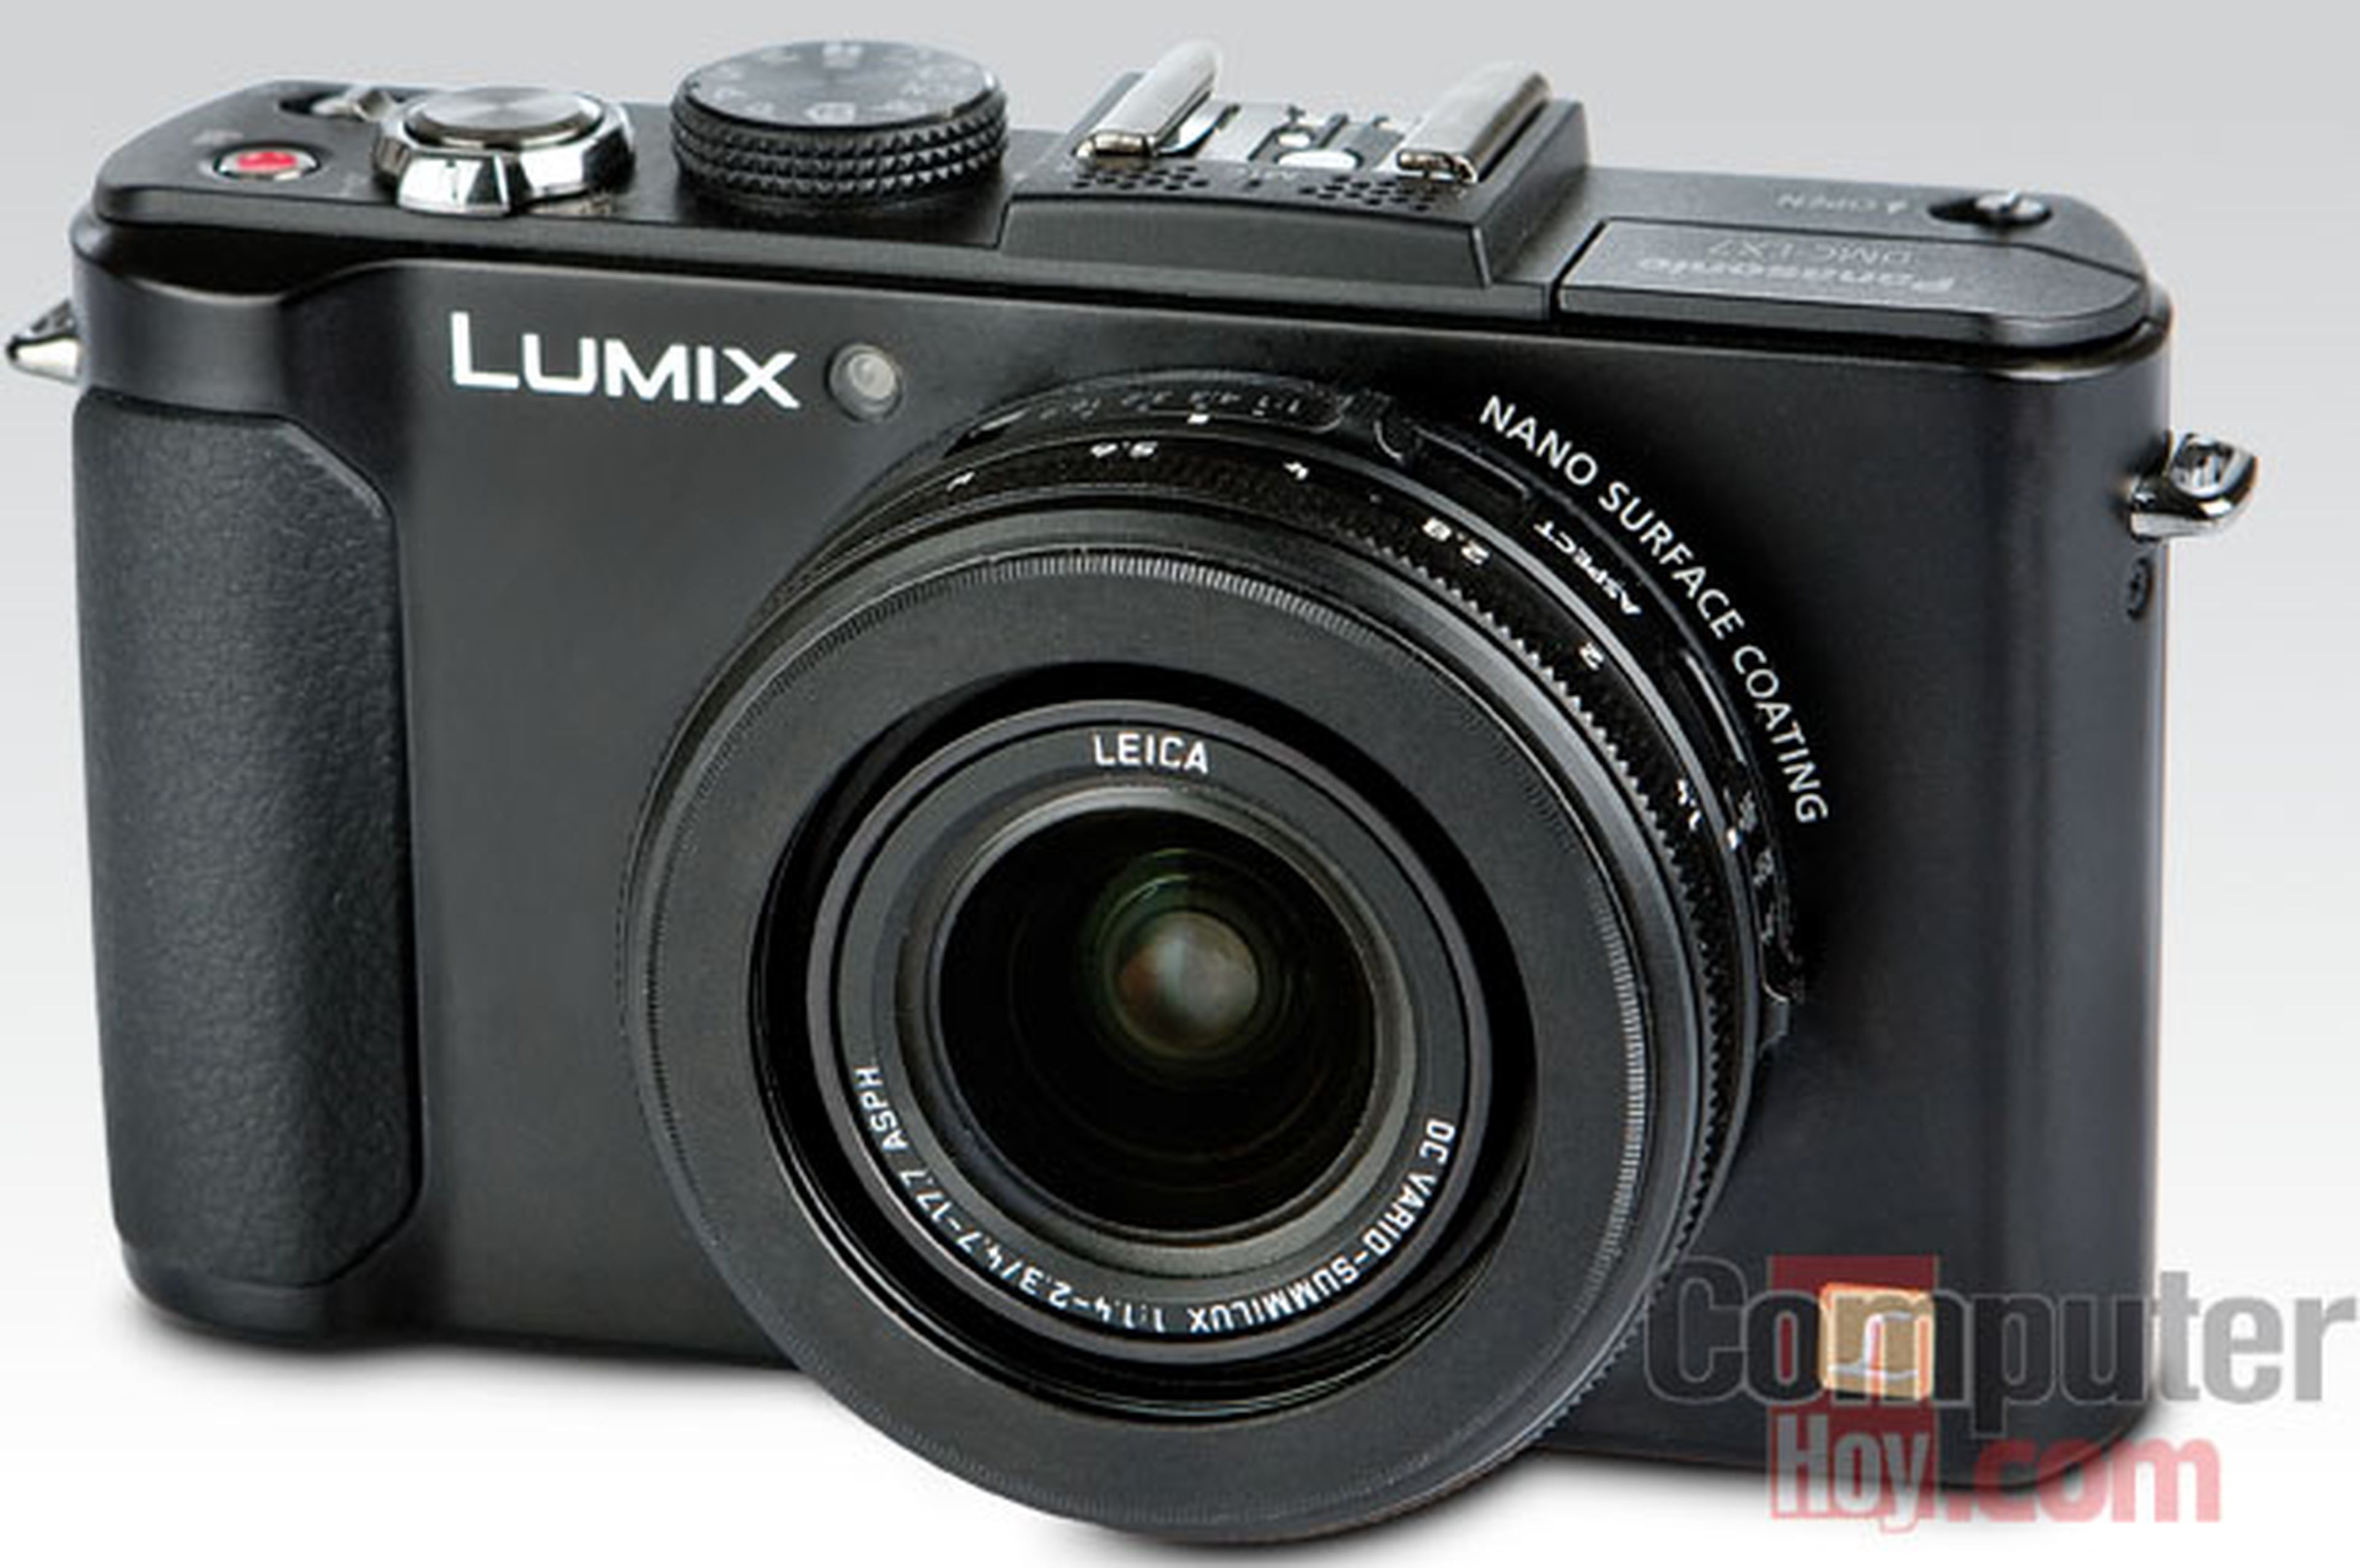 cÃ¡mara compacta Lumix DMC-LX7